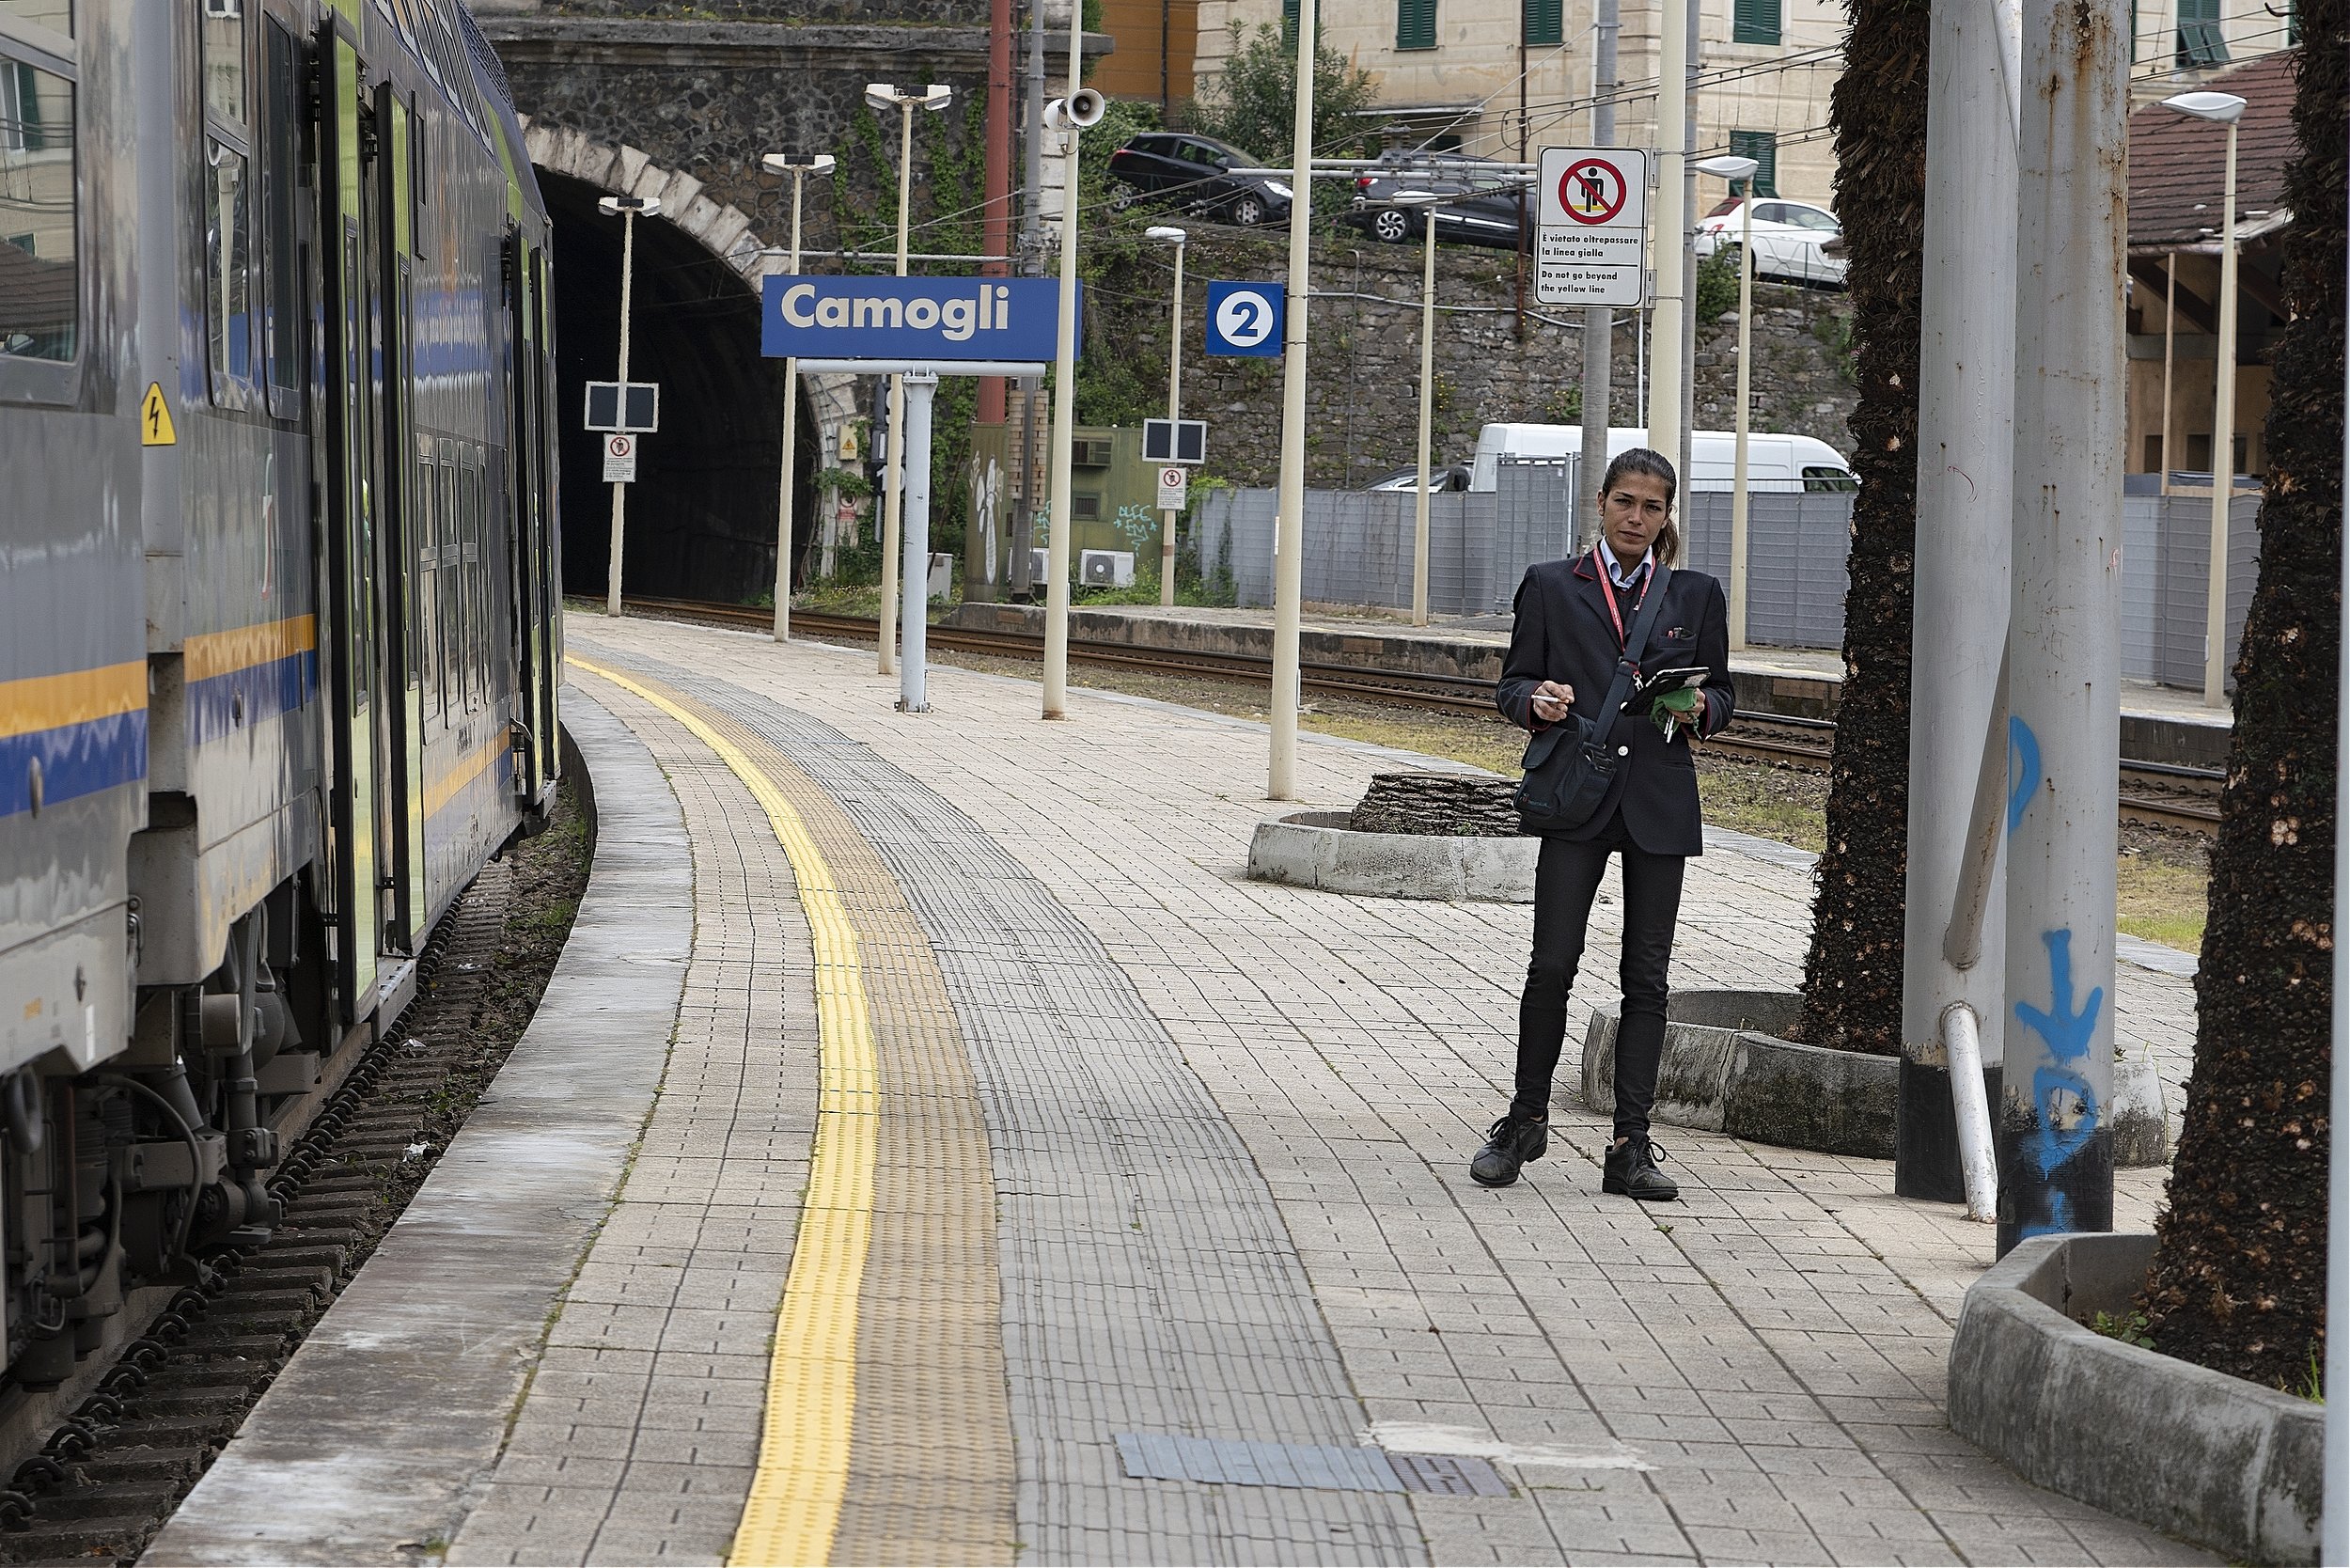 Train Conductor, Camogli, Liguria